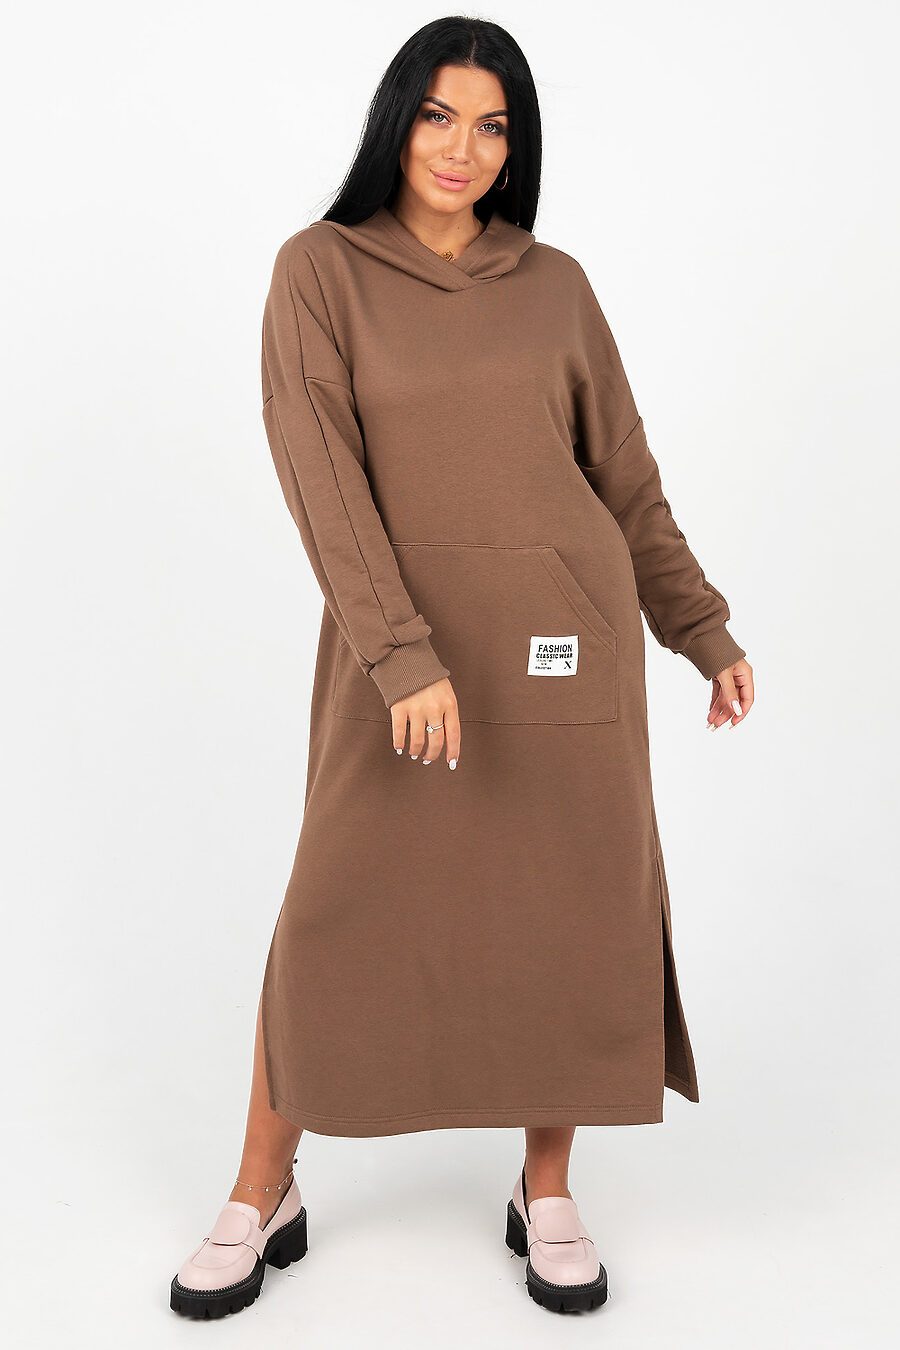 Платье 13655 для женщин НАТАЛИ 796197 купить оптом от производителя. Совместная покупка женской одежды в OptMoyo